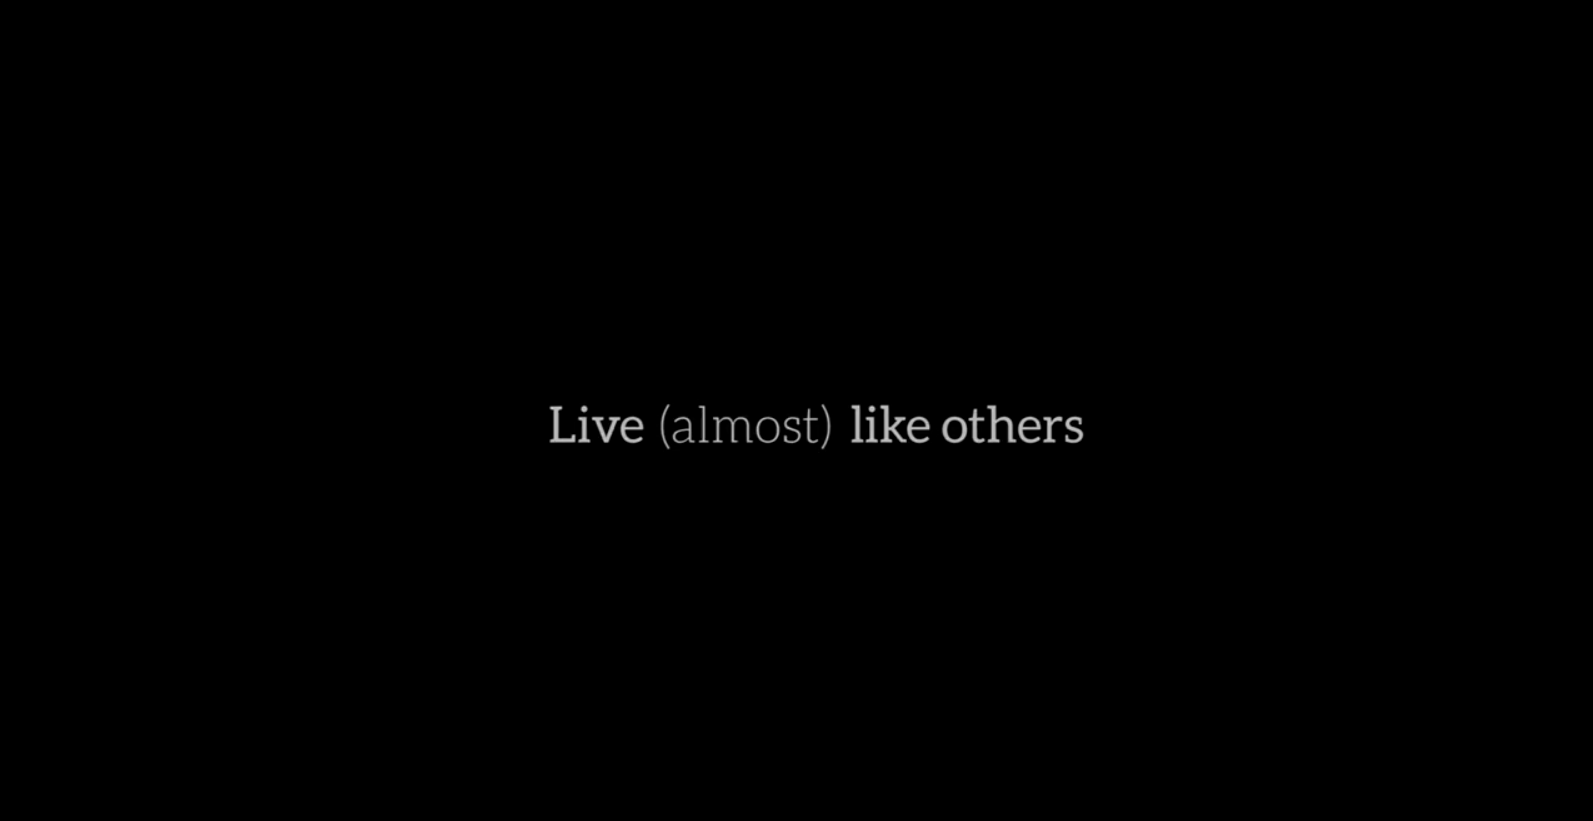 Startbild Video mit Titel Live (almost) like others in weißer Schrift auf schwarzem Hintergrund